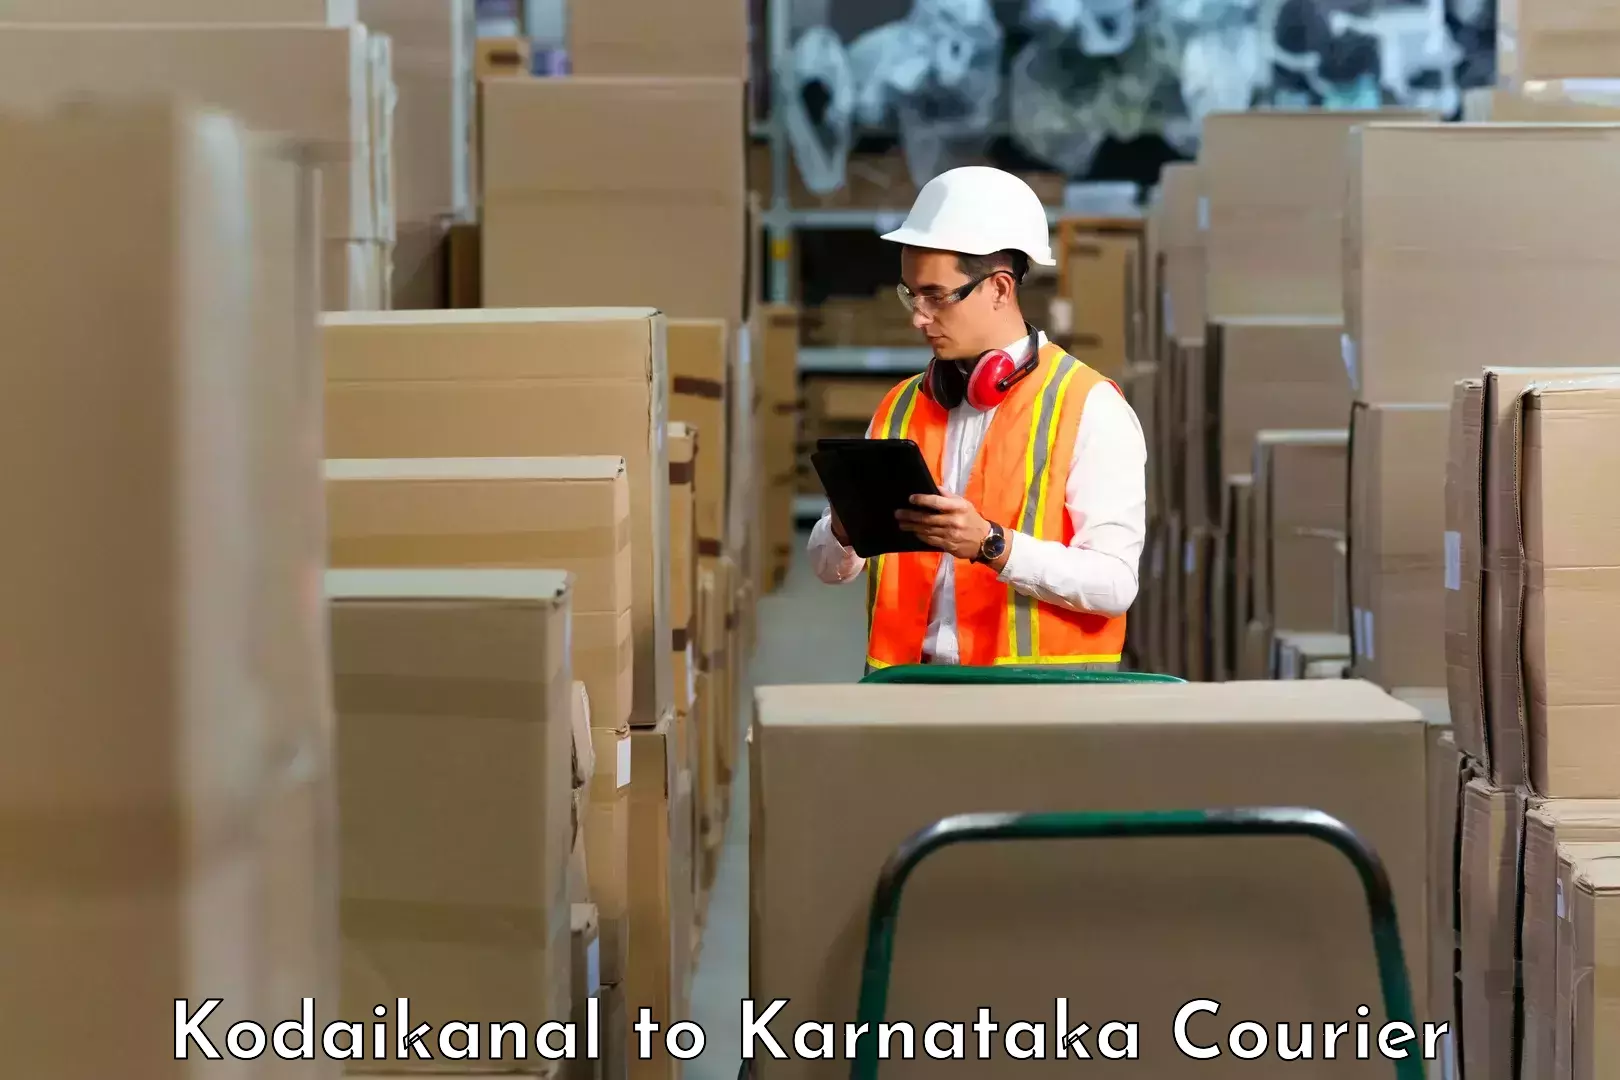 Efficient order fulfillment Kodaikanal to Tarikere